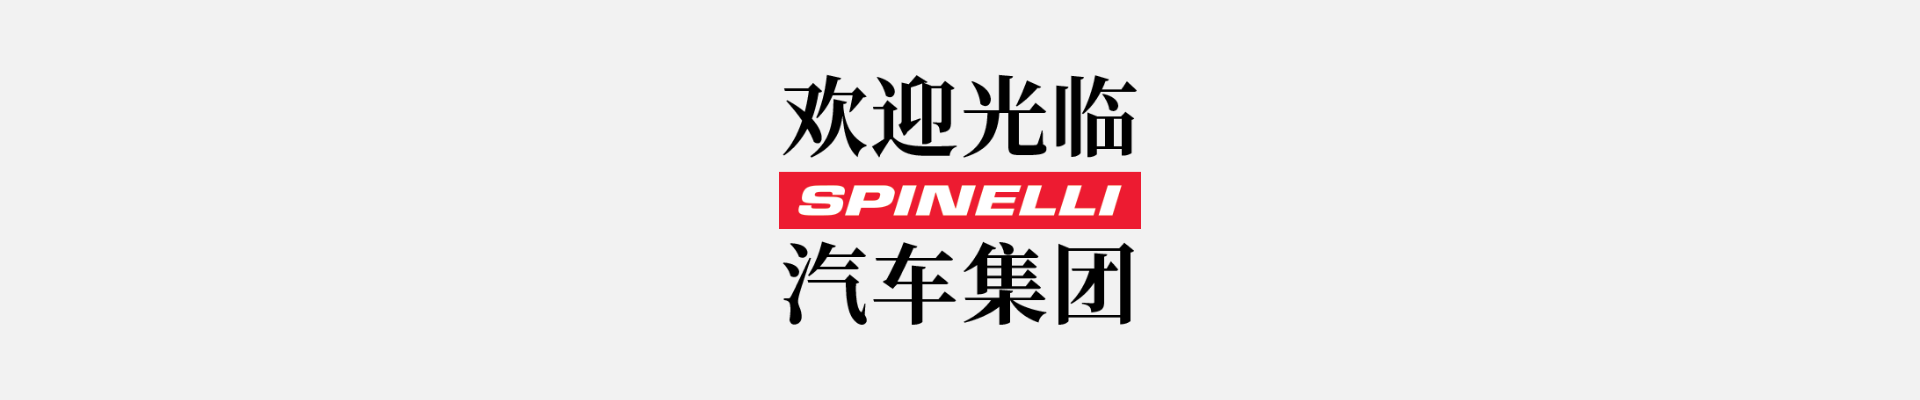 欢迎您到访Spinelli!